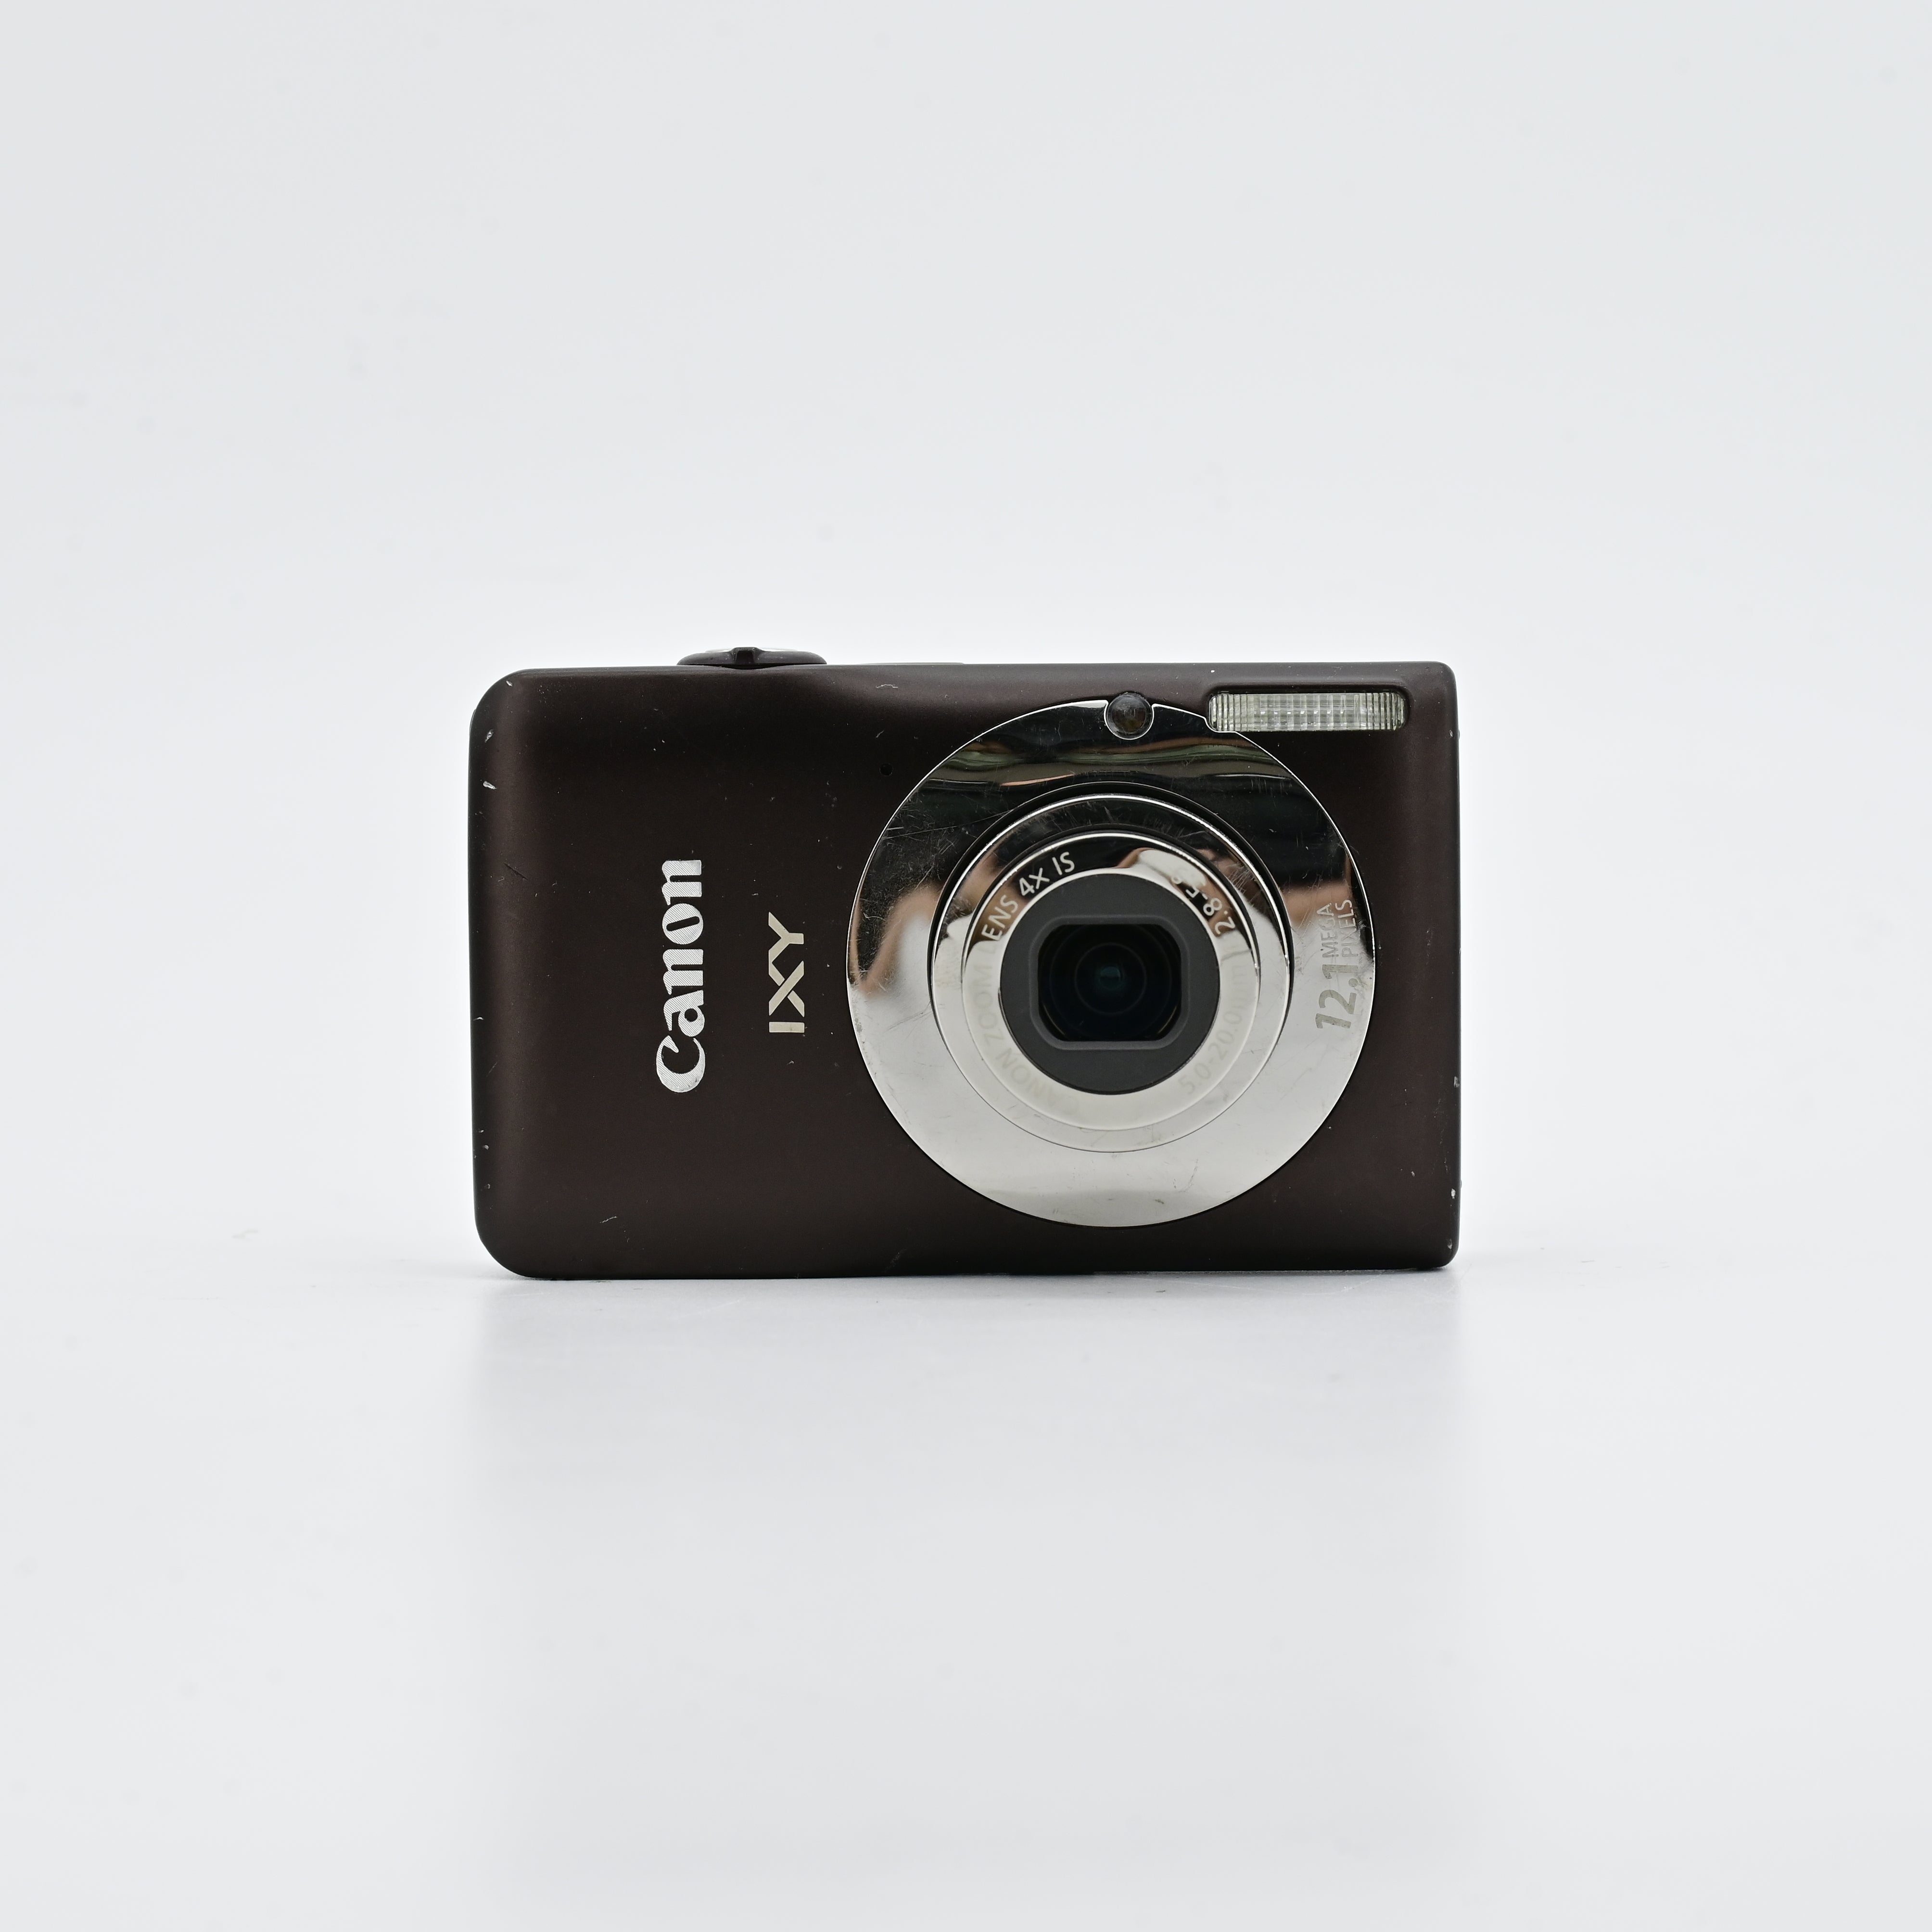 Canon IXY 200F (PowerShot SD1300 IS / IXUS 105)